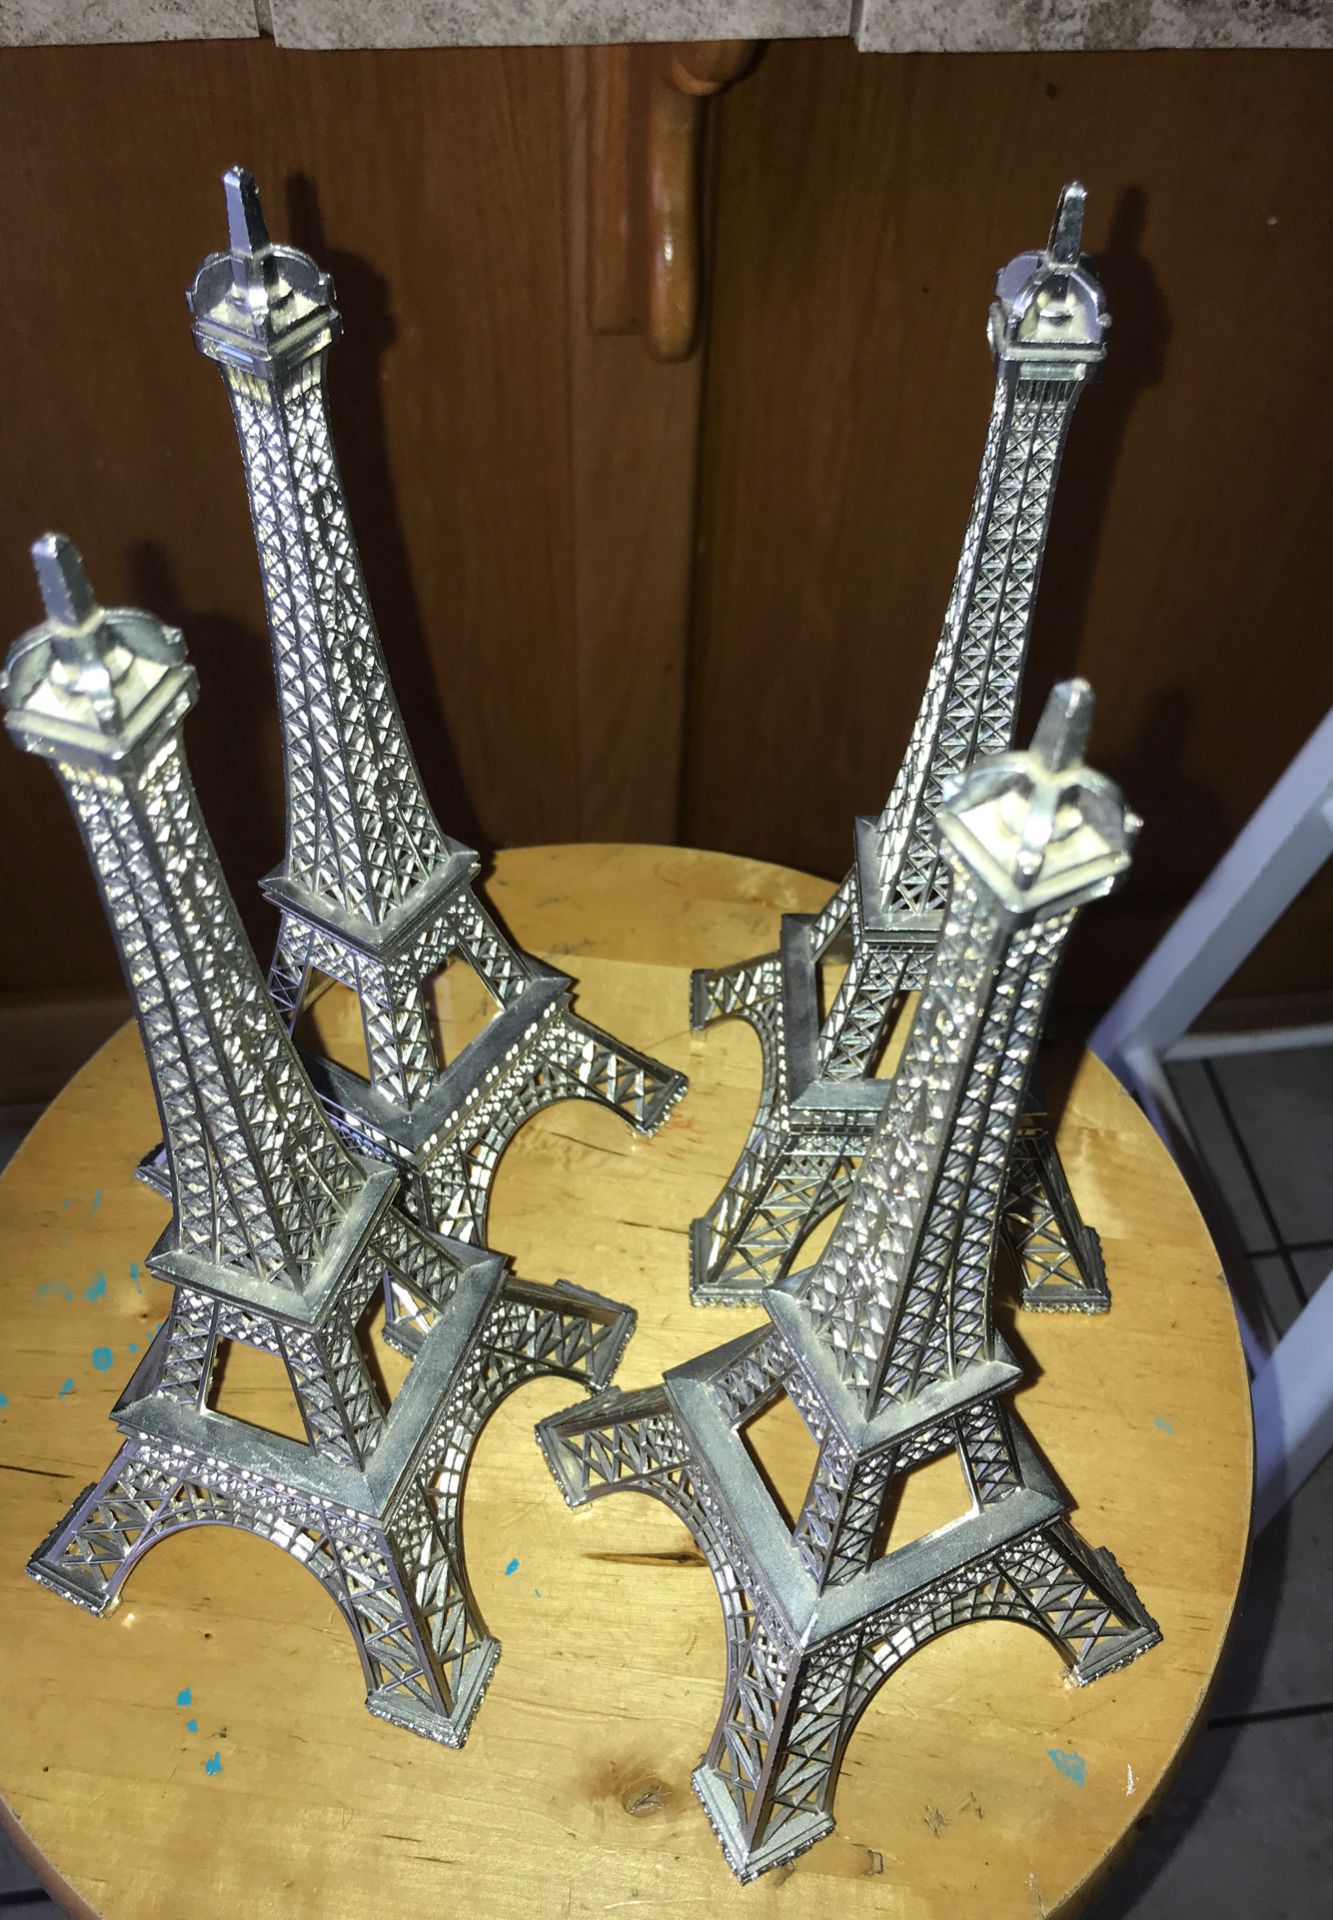 4 Paris towers